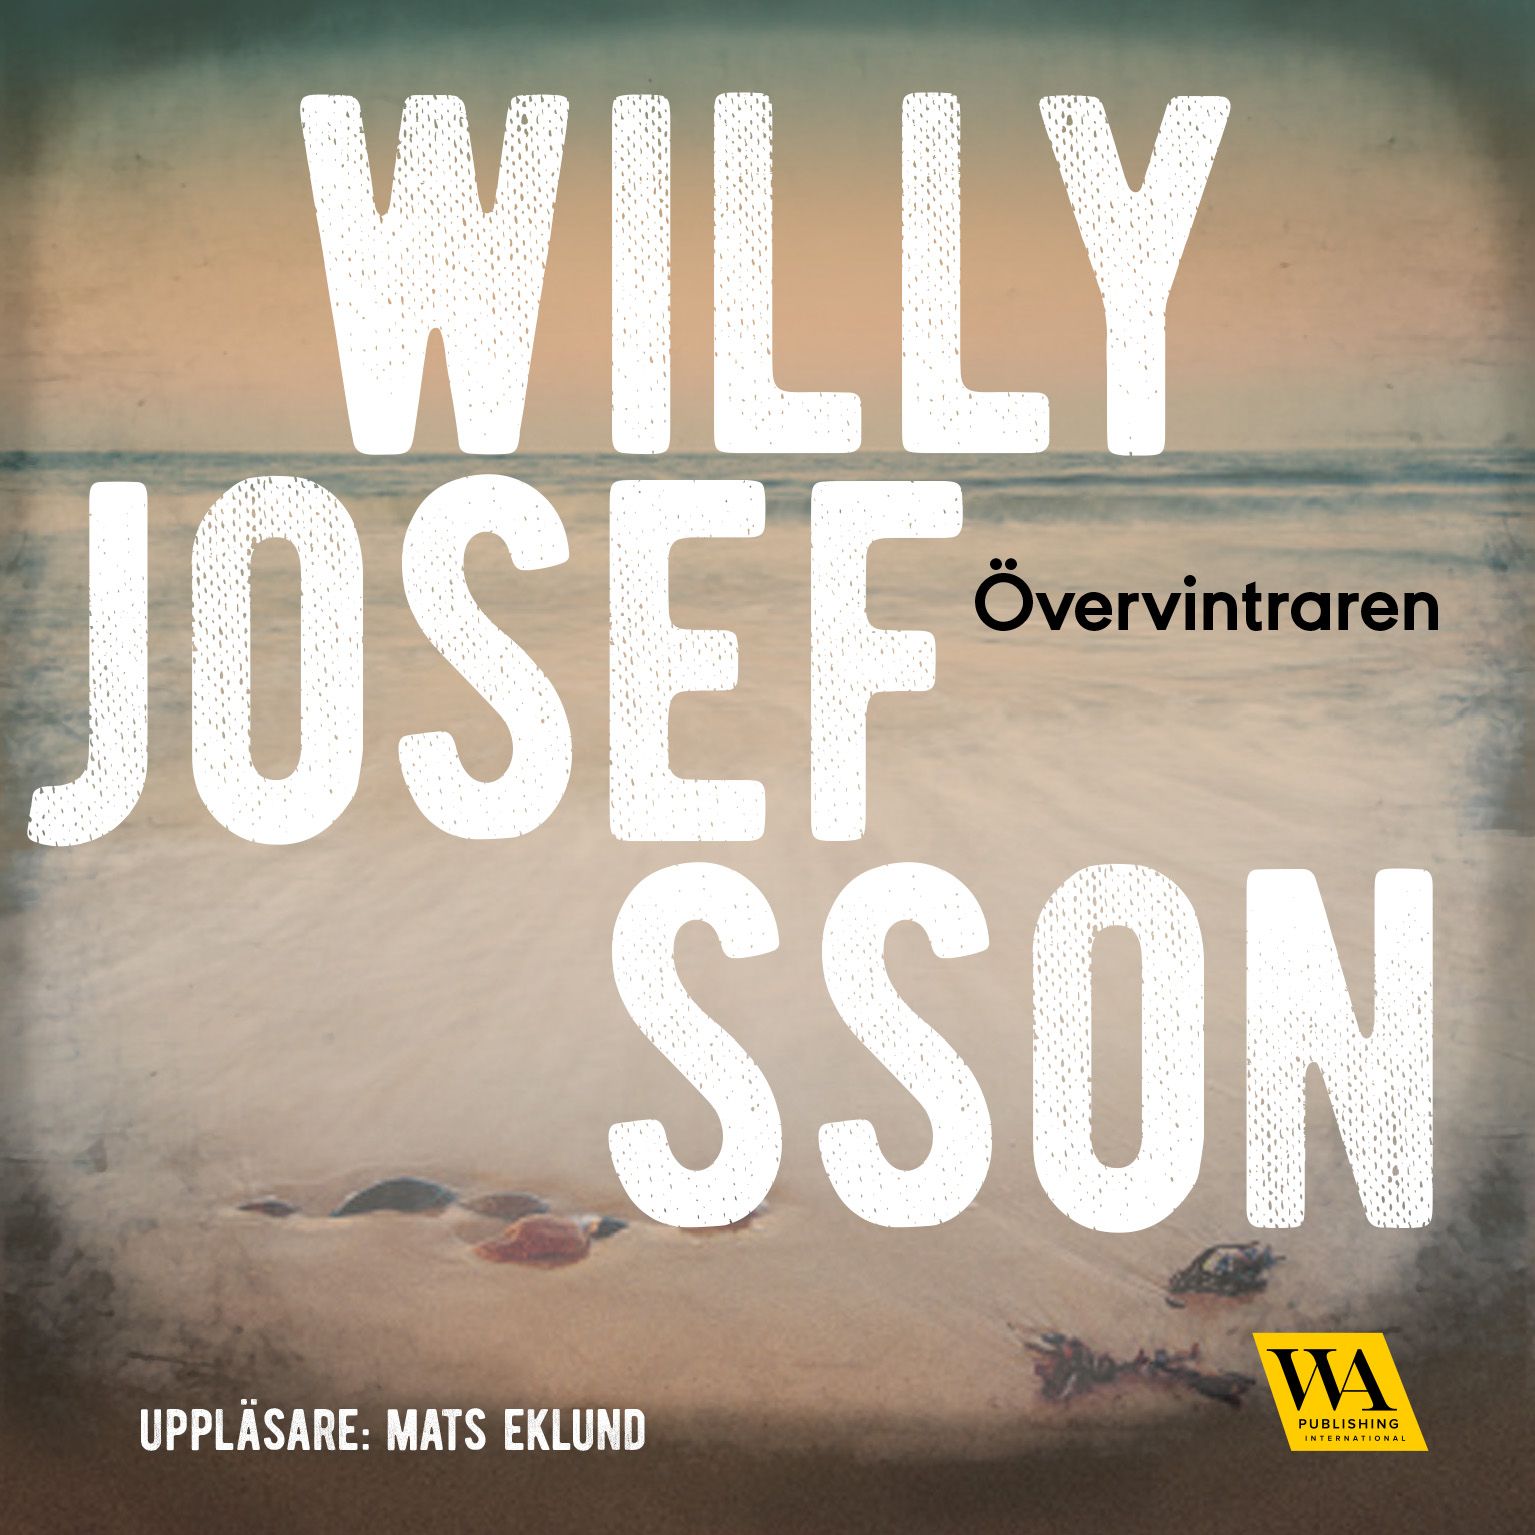 Övervintraren, ljudbok av Willy Josefsson